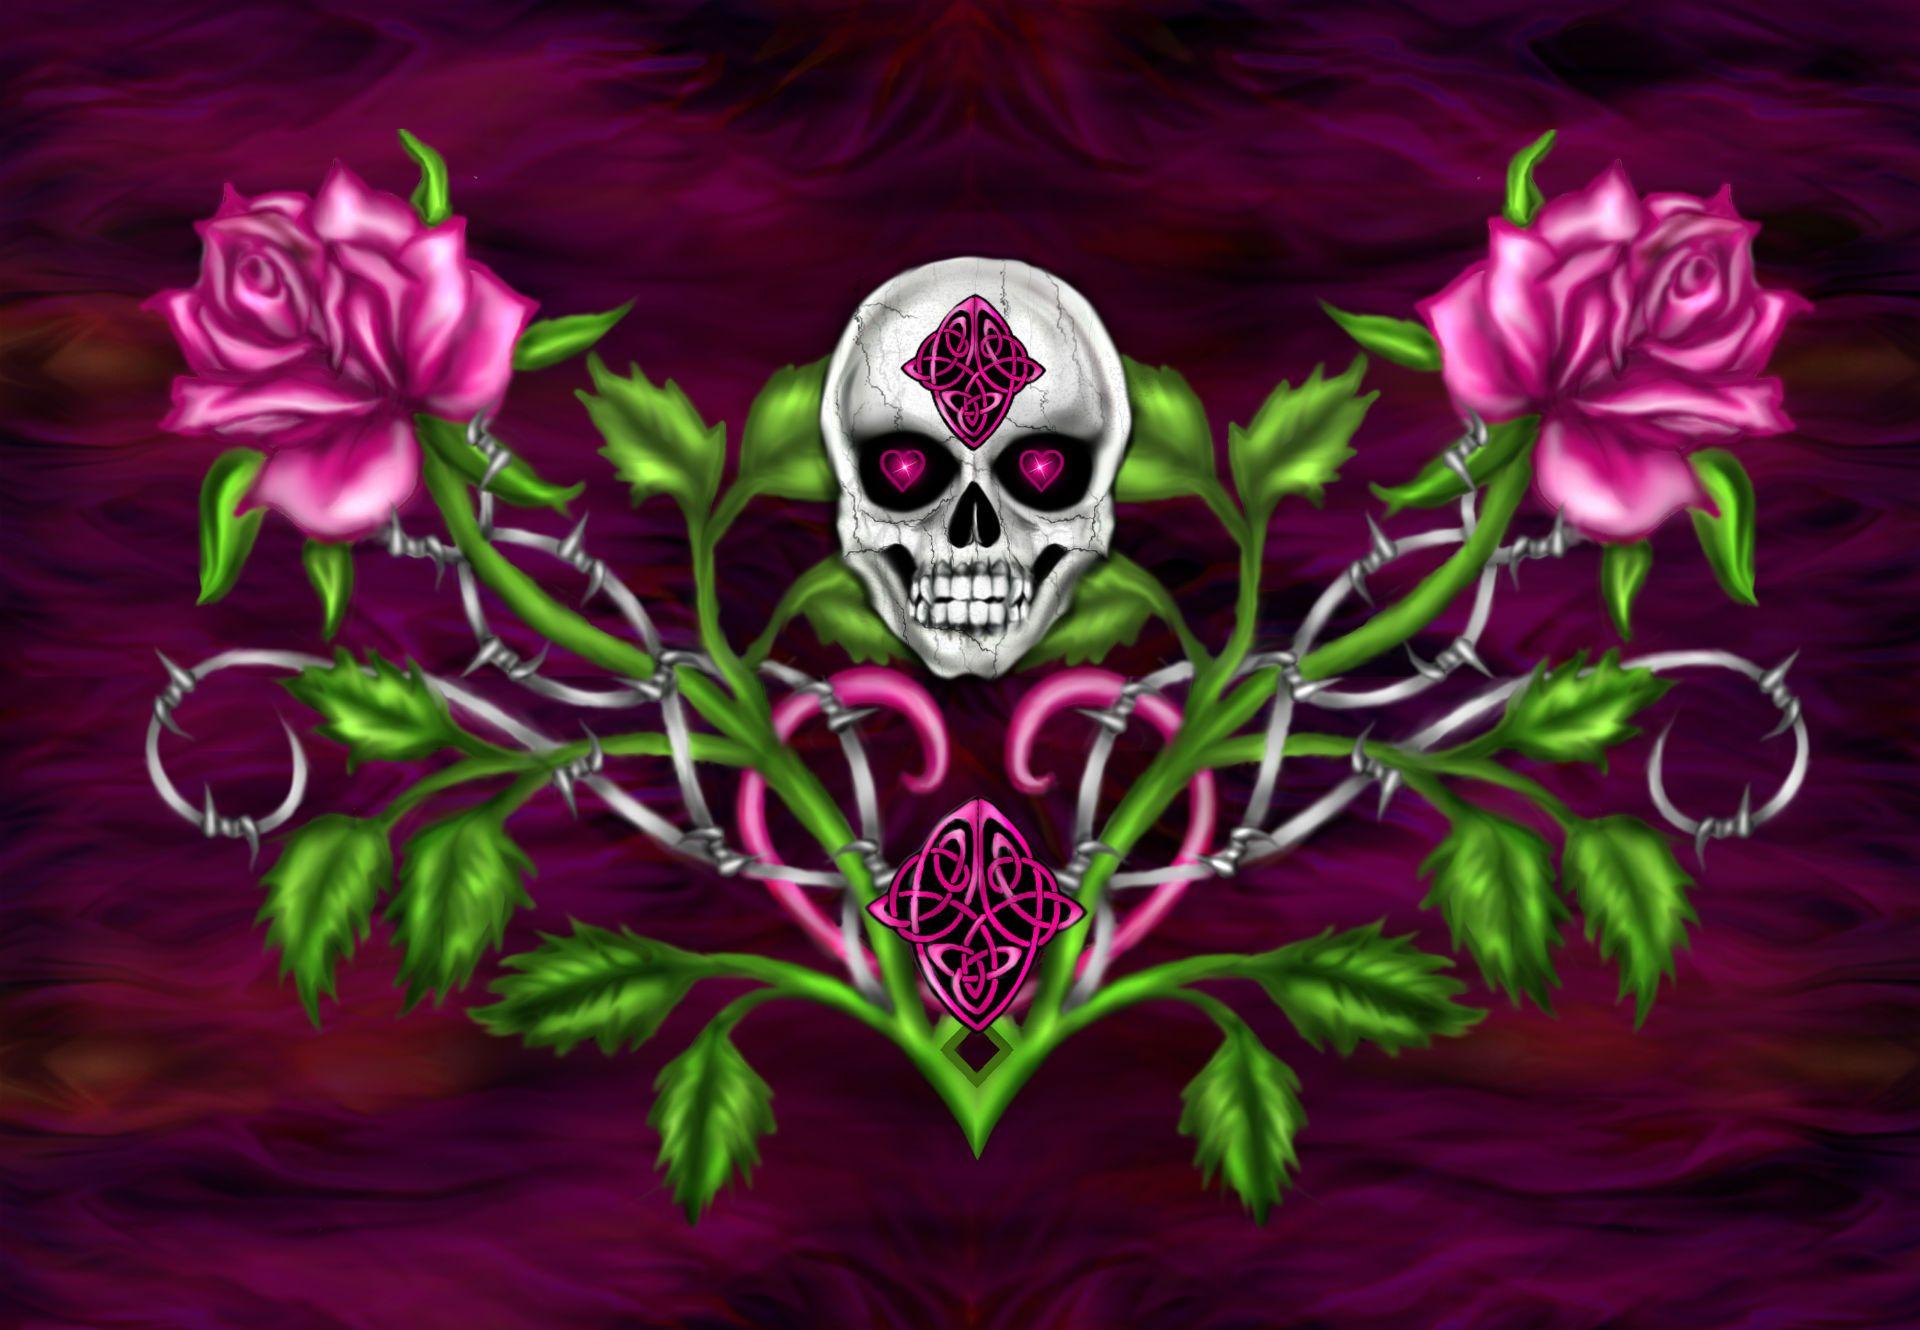 Dark horror gothic skull flowers occult art wallpaperx1330